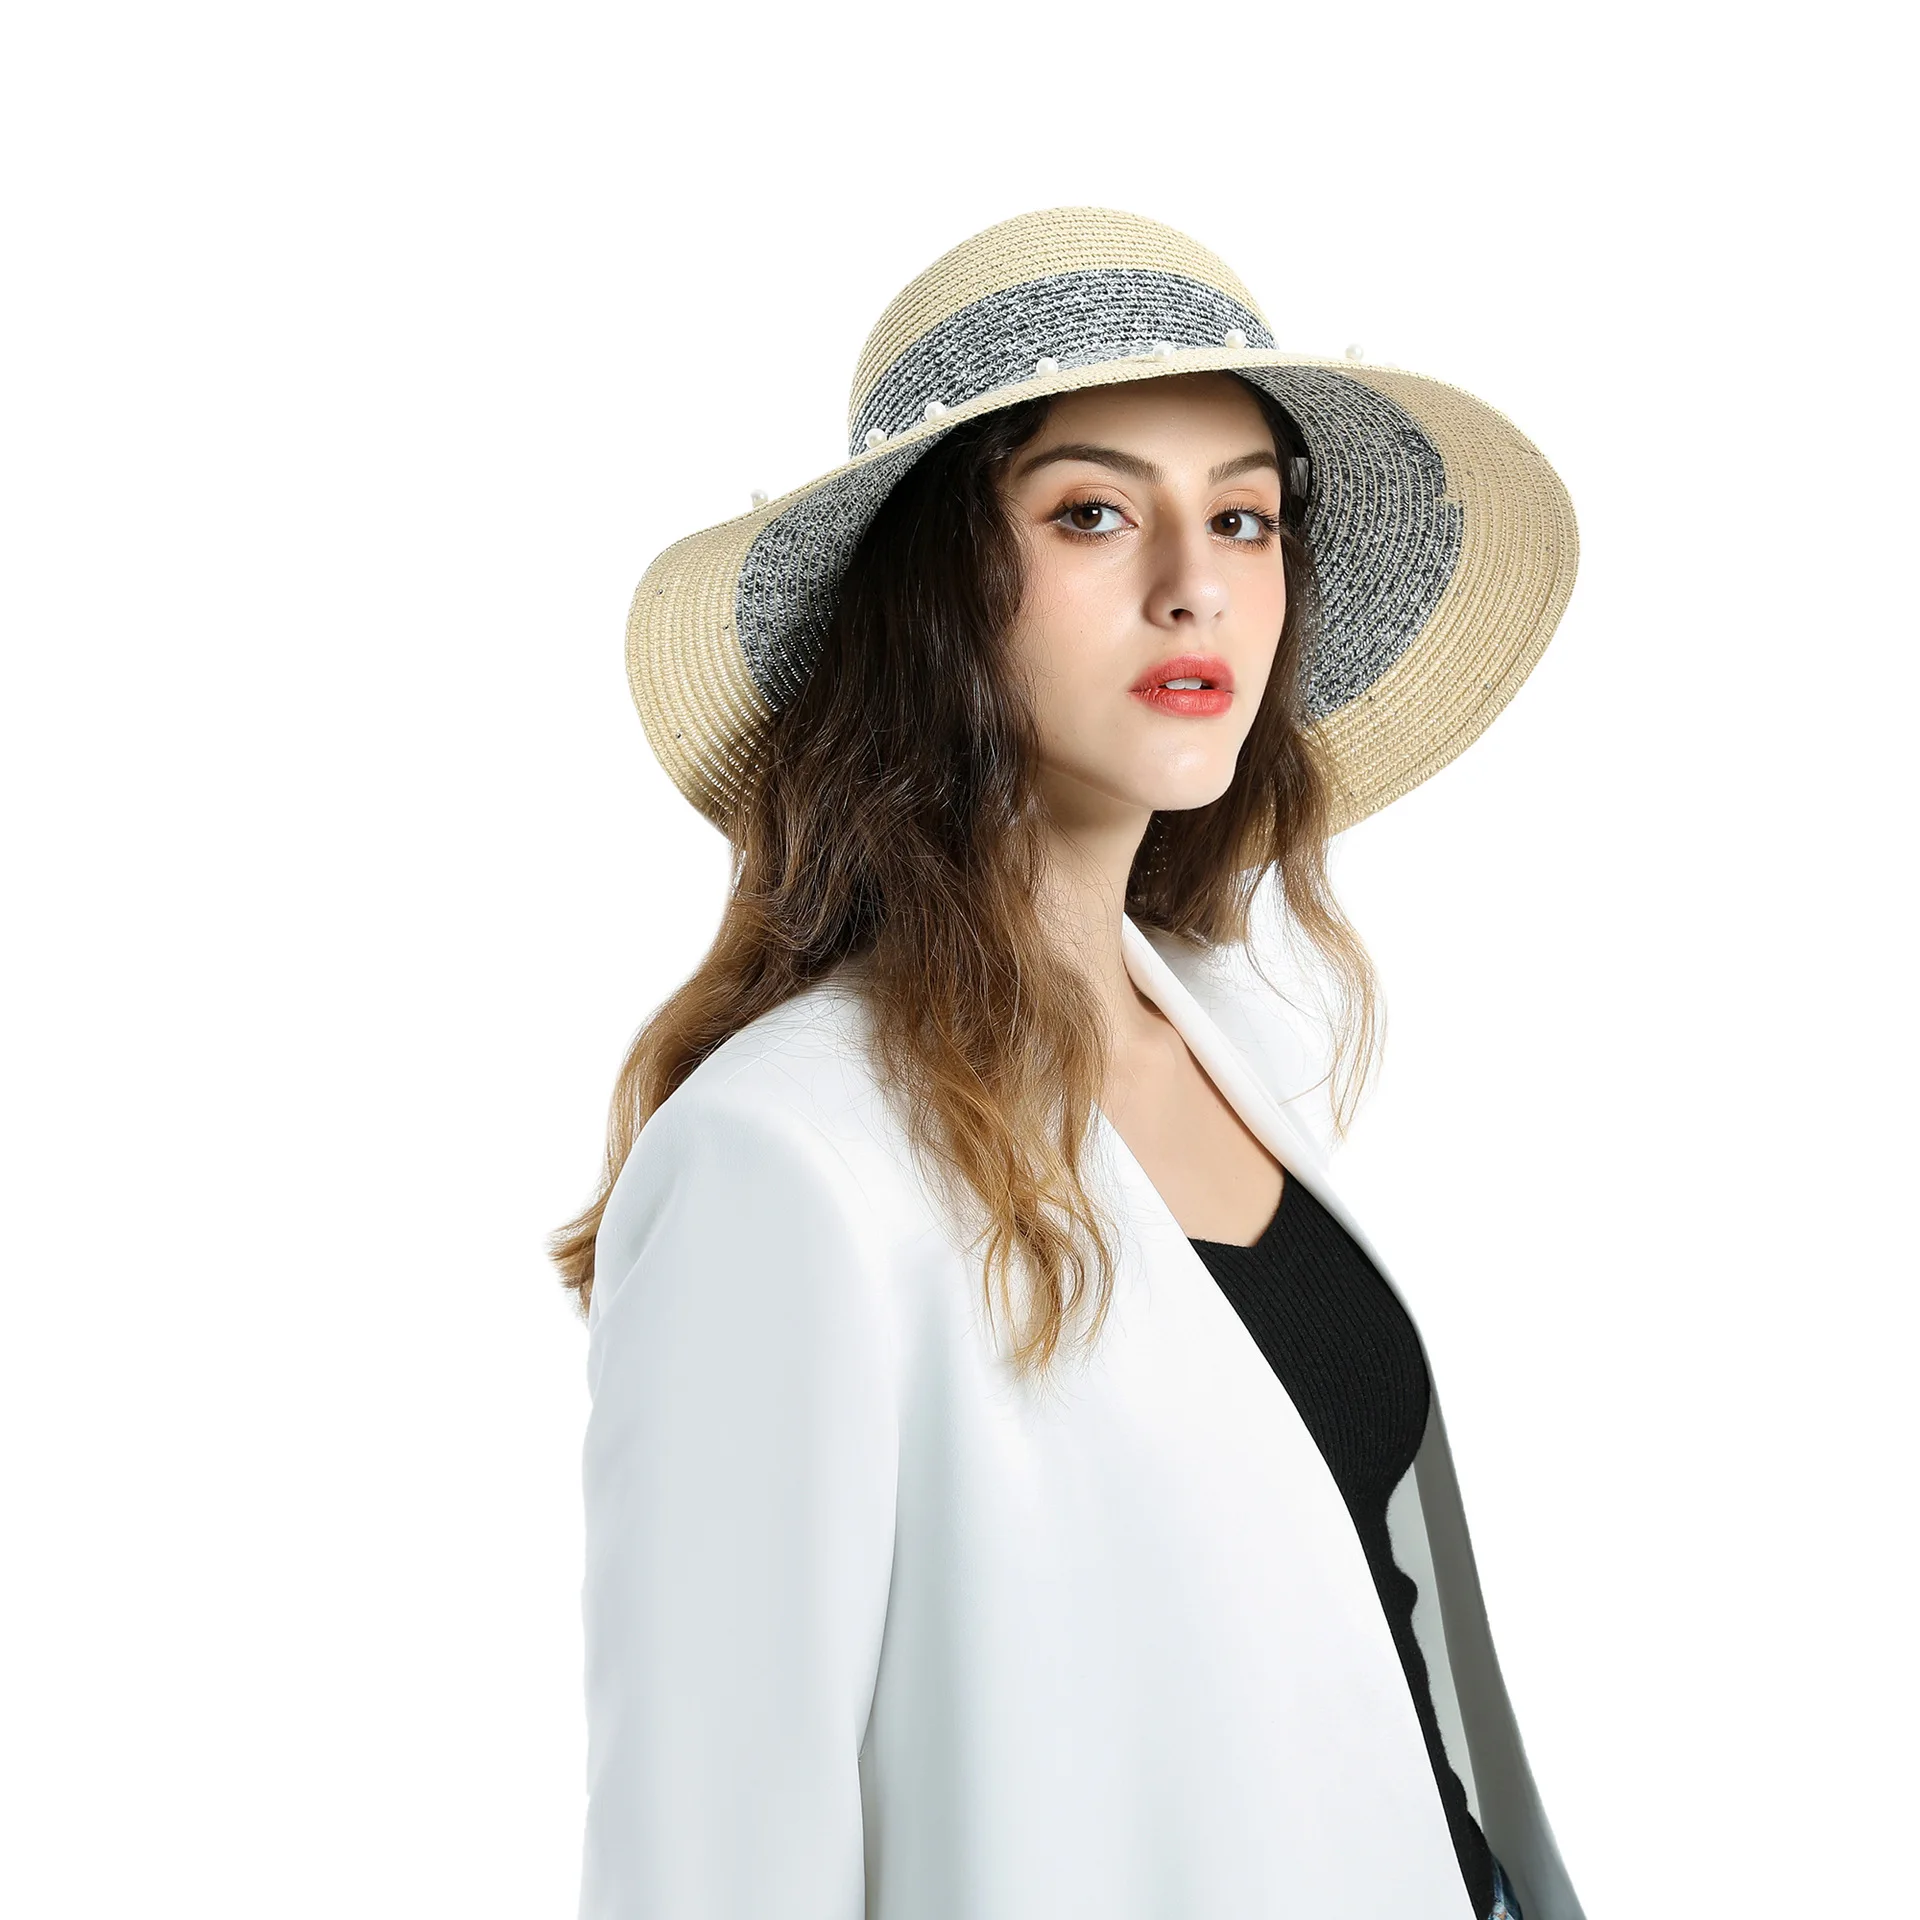 

Шляпа соломенная Складная женская, Пляжная Панама с широкими полями для отдыха, элегантная солнцезащитная Кепка, аксессуар для весны и лета